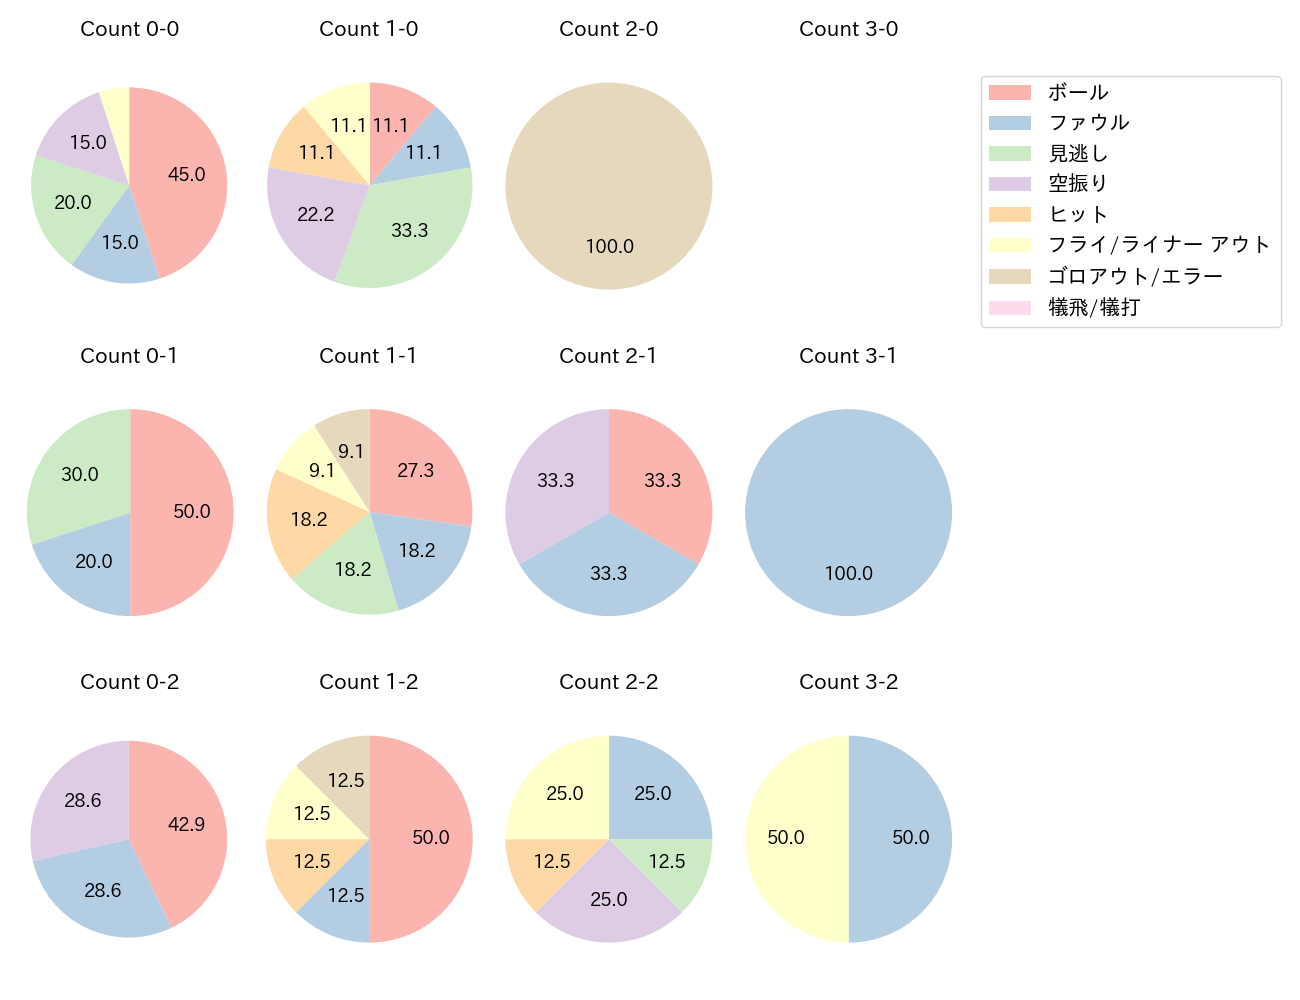 太田 椋の球数分布(2021年3月)